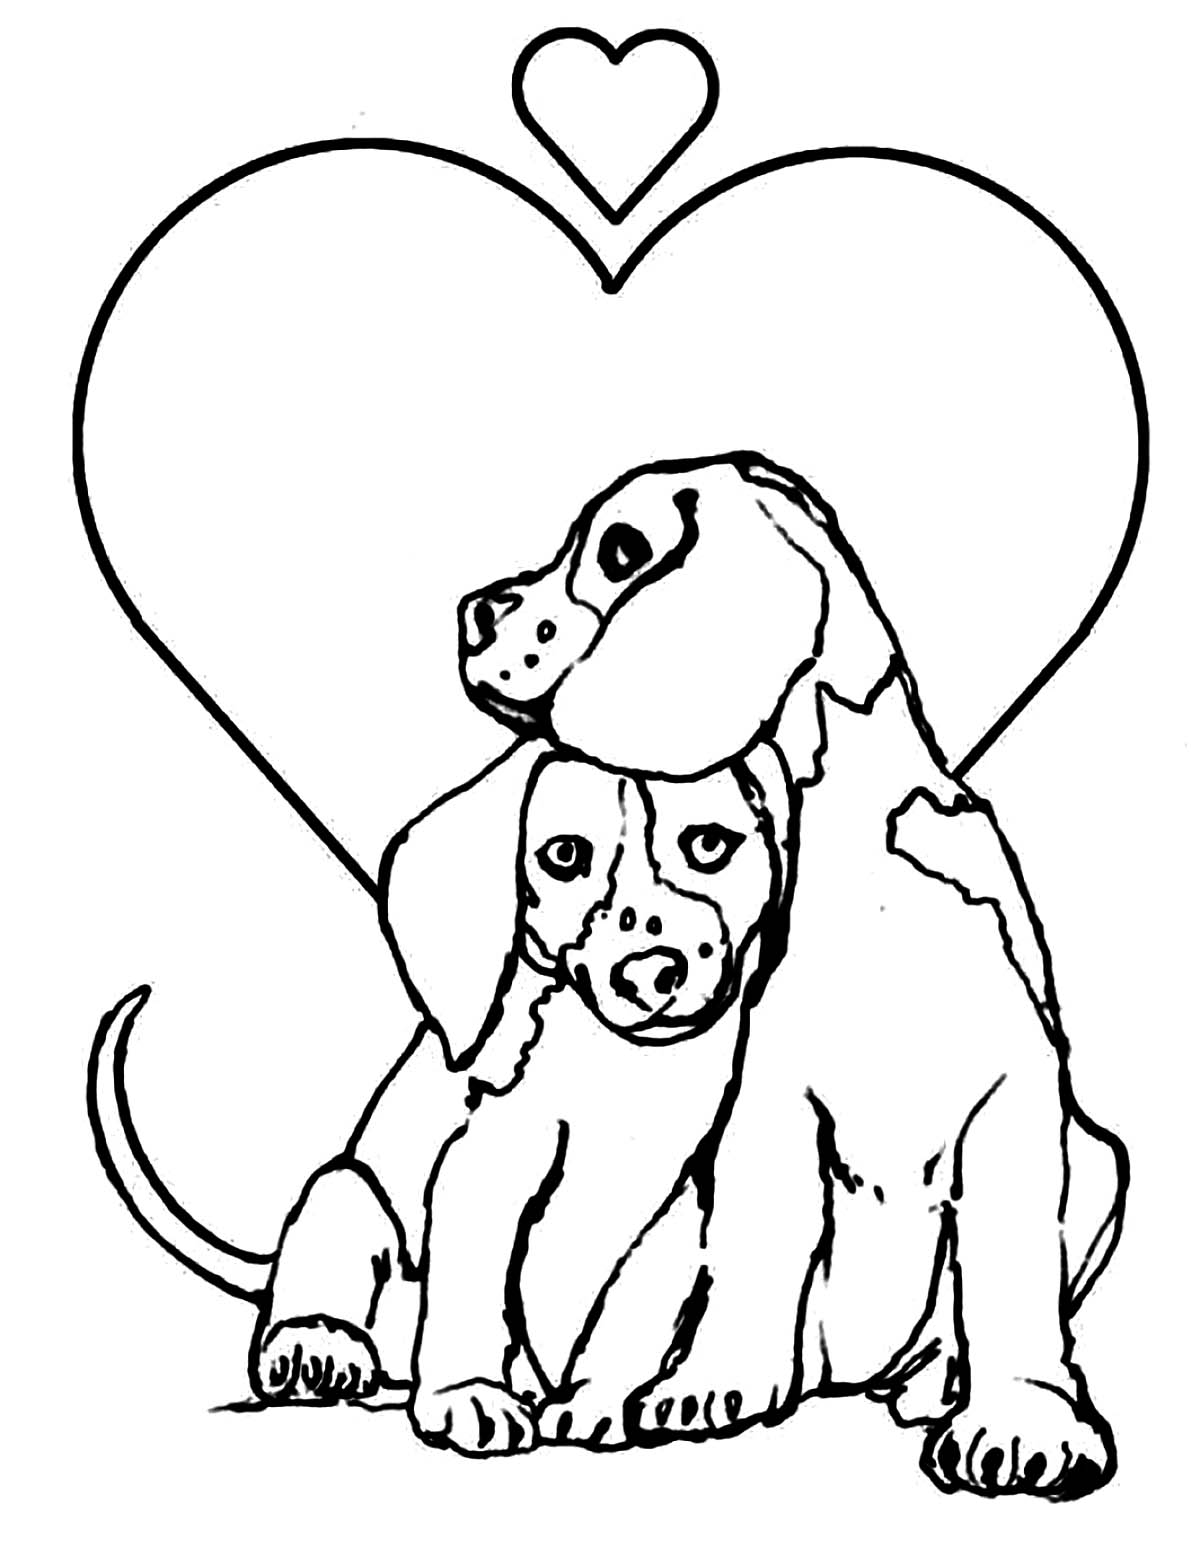 Tranh tô màu hai chú chó và hình trái tim